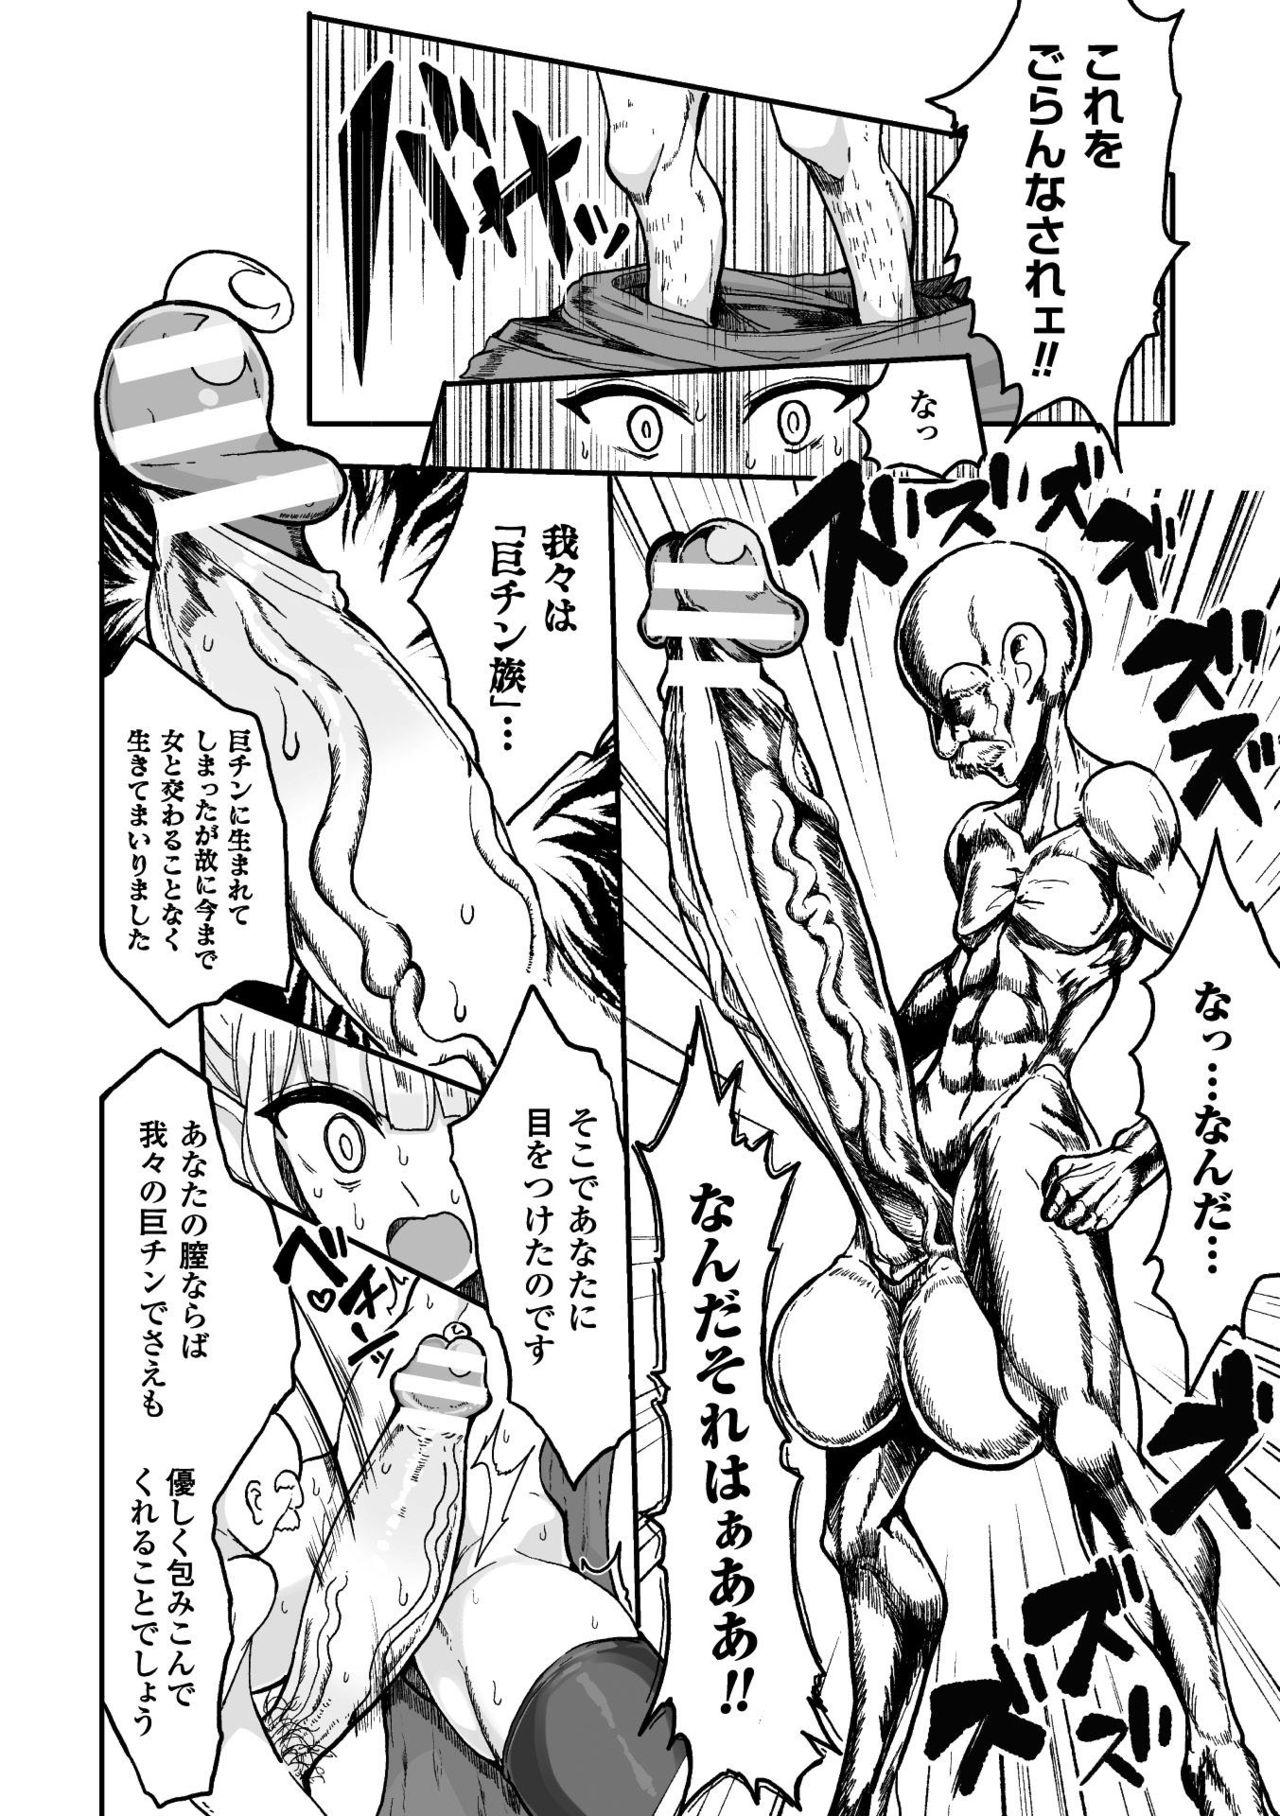 Emo Kyojinzoku No Onna Kishi VS Goblin Gundan Group - Page 10